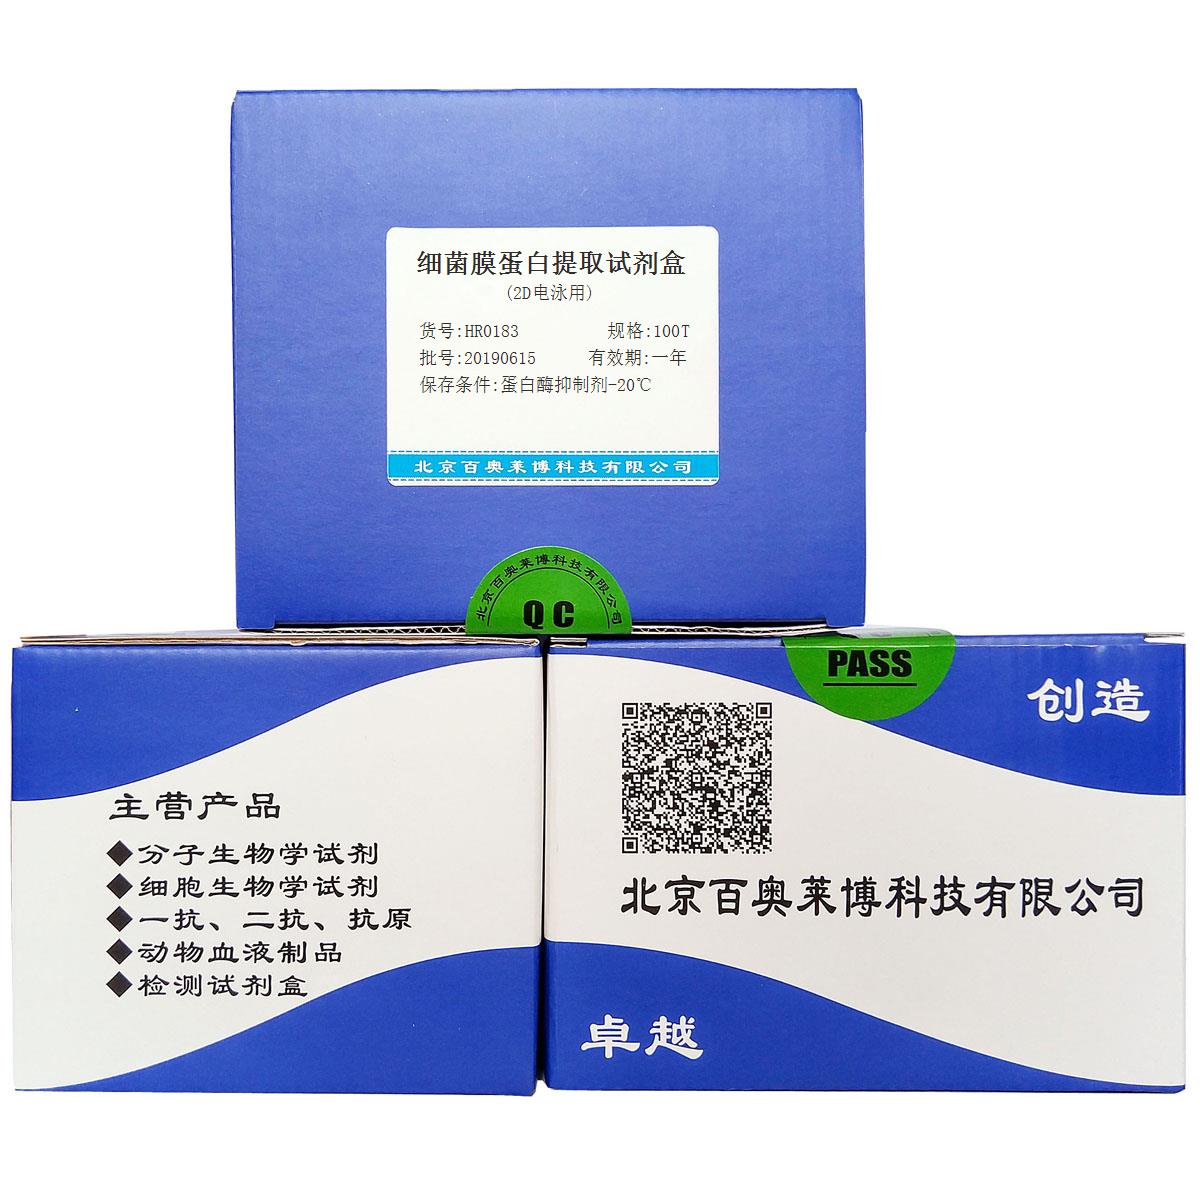 细菌膜蛋白提取试剂盒(2D电泳用)北京供应商